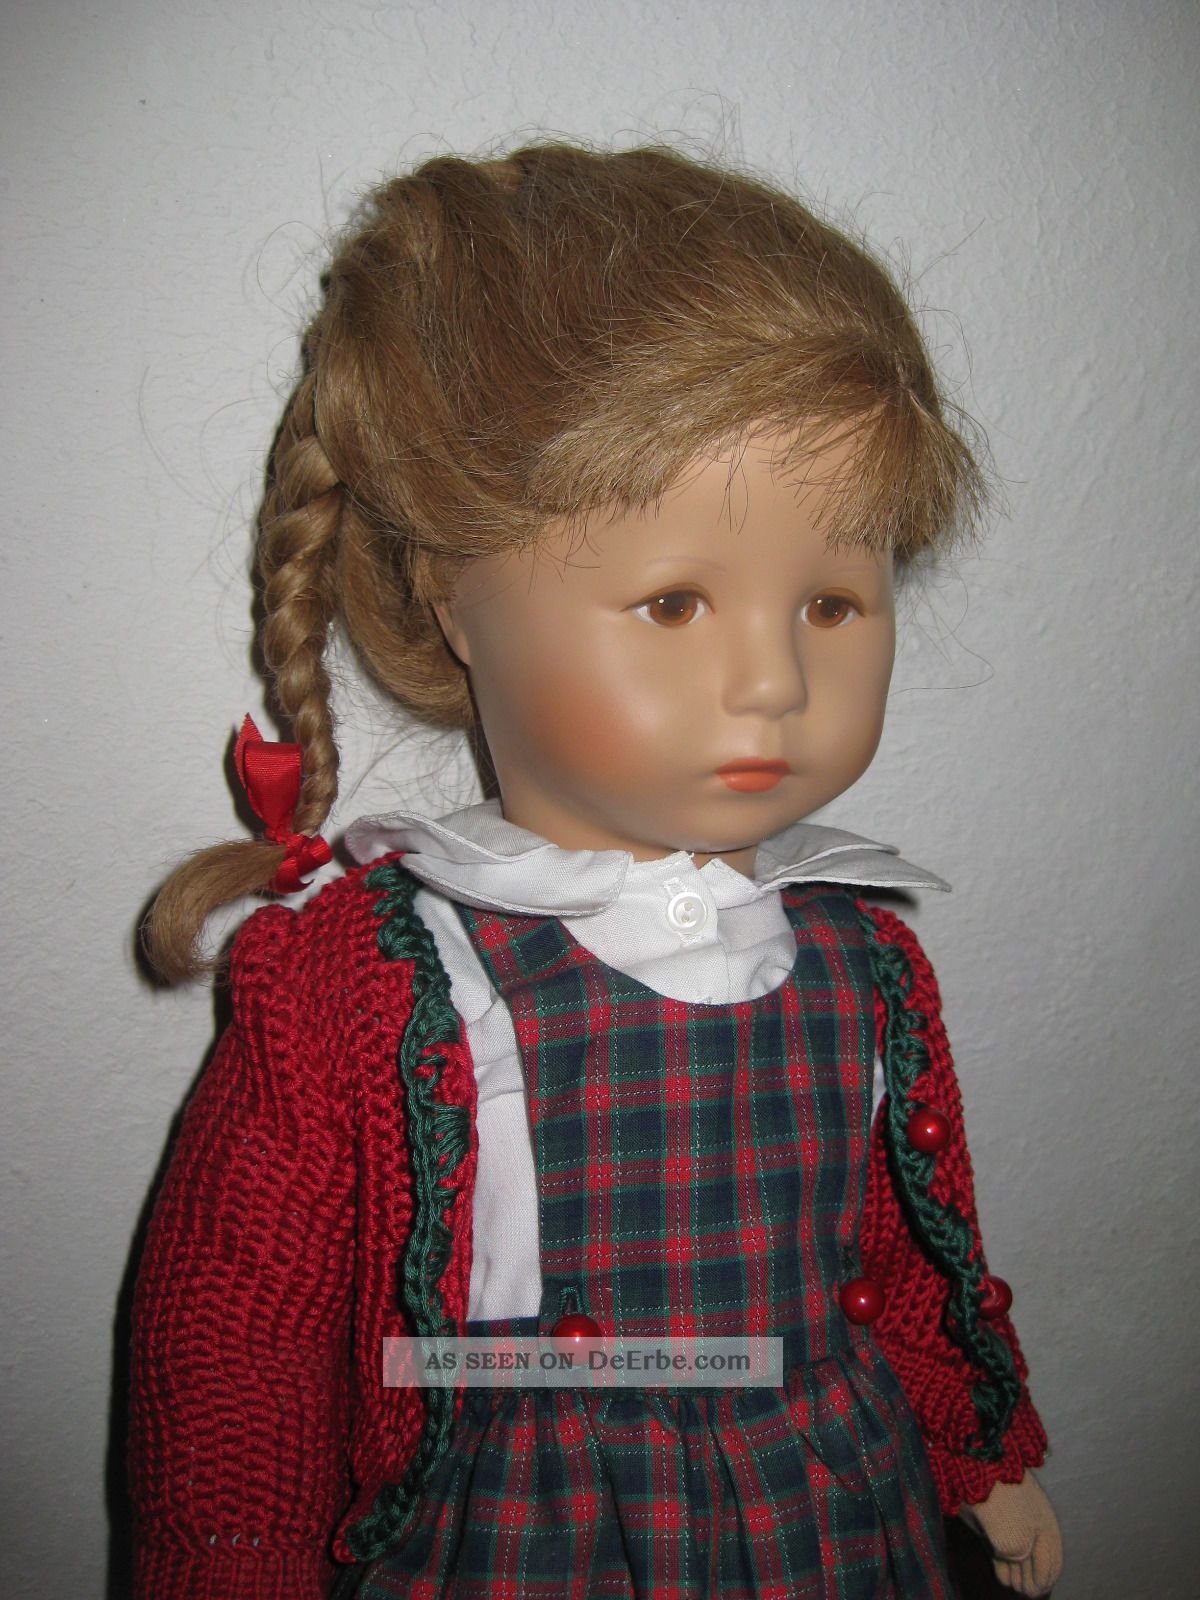 Unbespielte Käthe Kruse Puppe Mädchen Blond Mit Rotkariertem Kleid 48